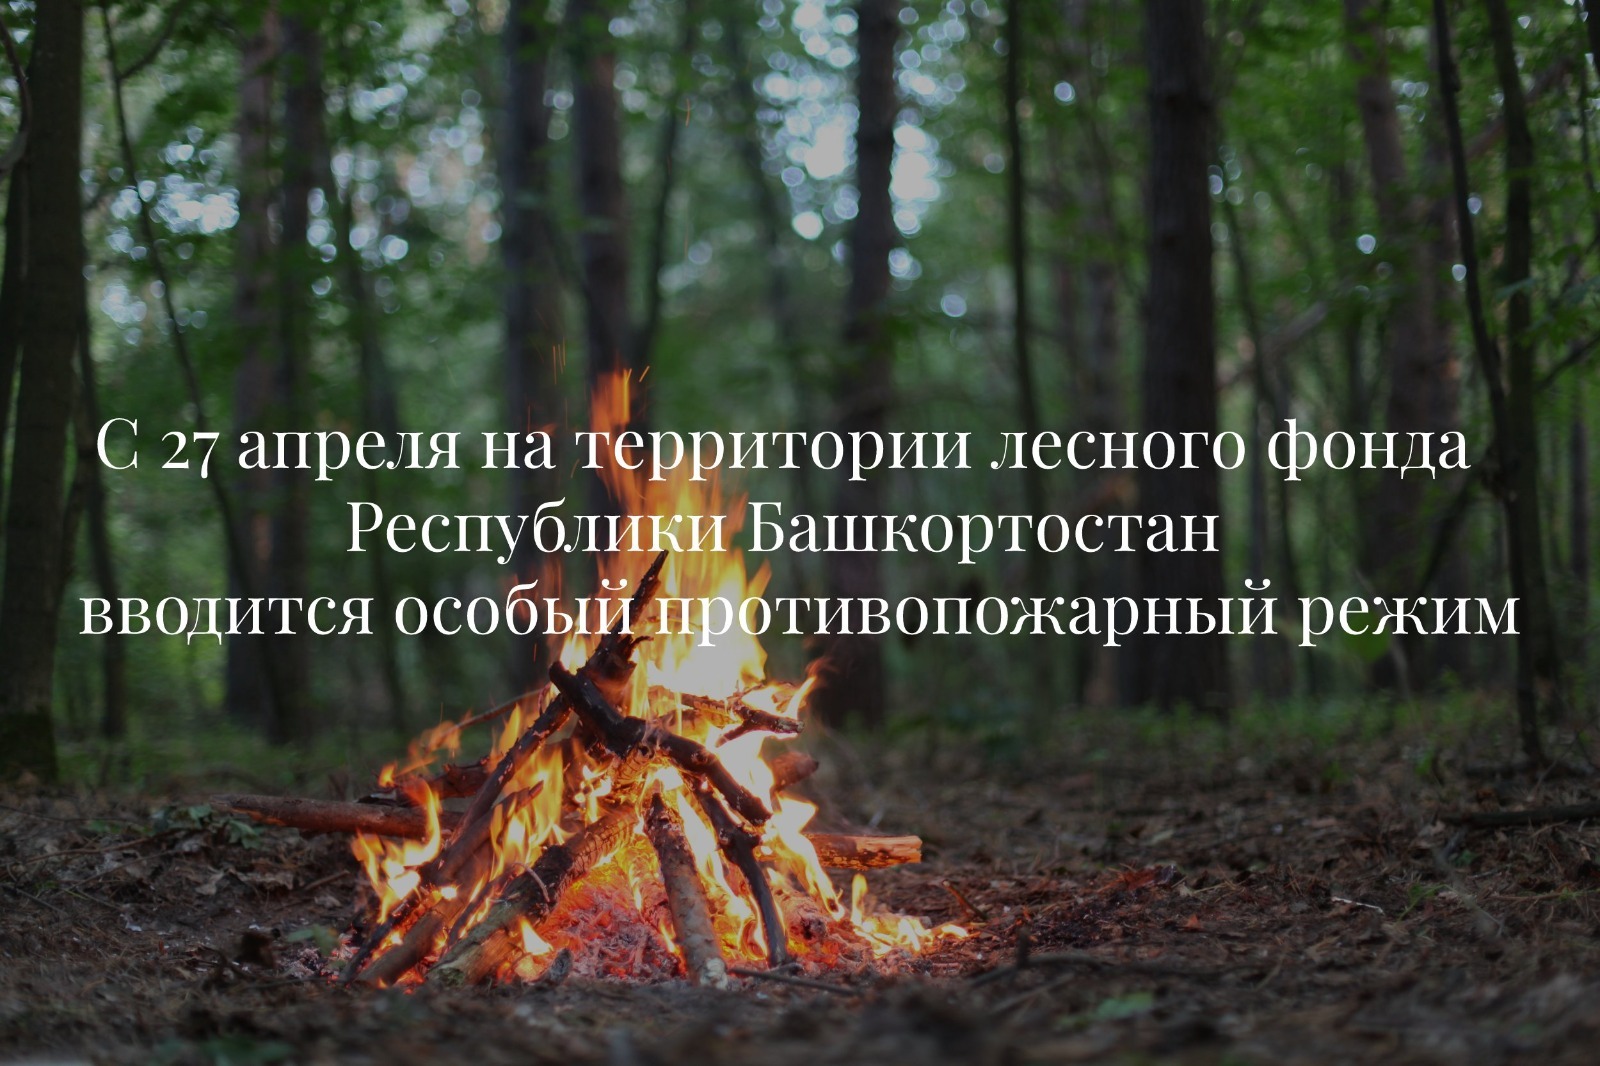 В лесах Башкирии с 27 апреля вводится особый противопожарный режим